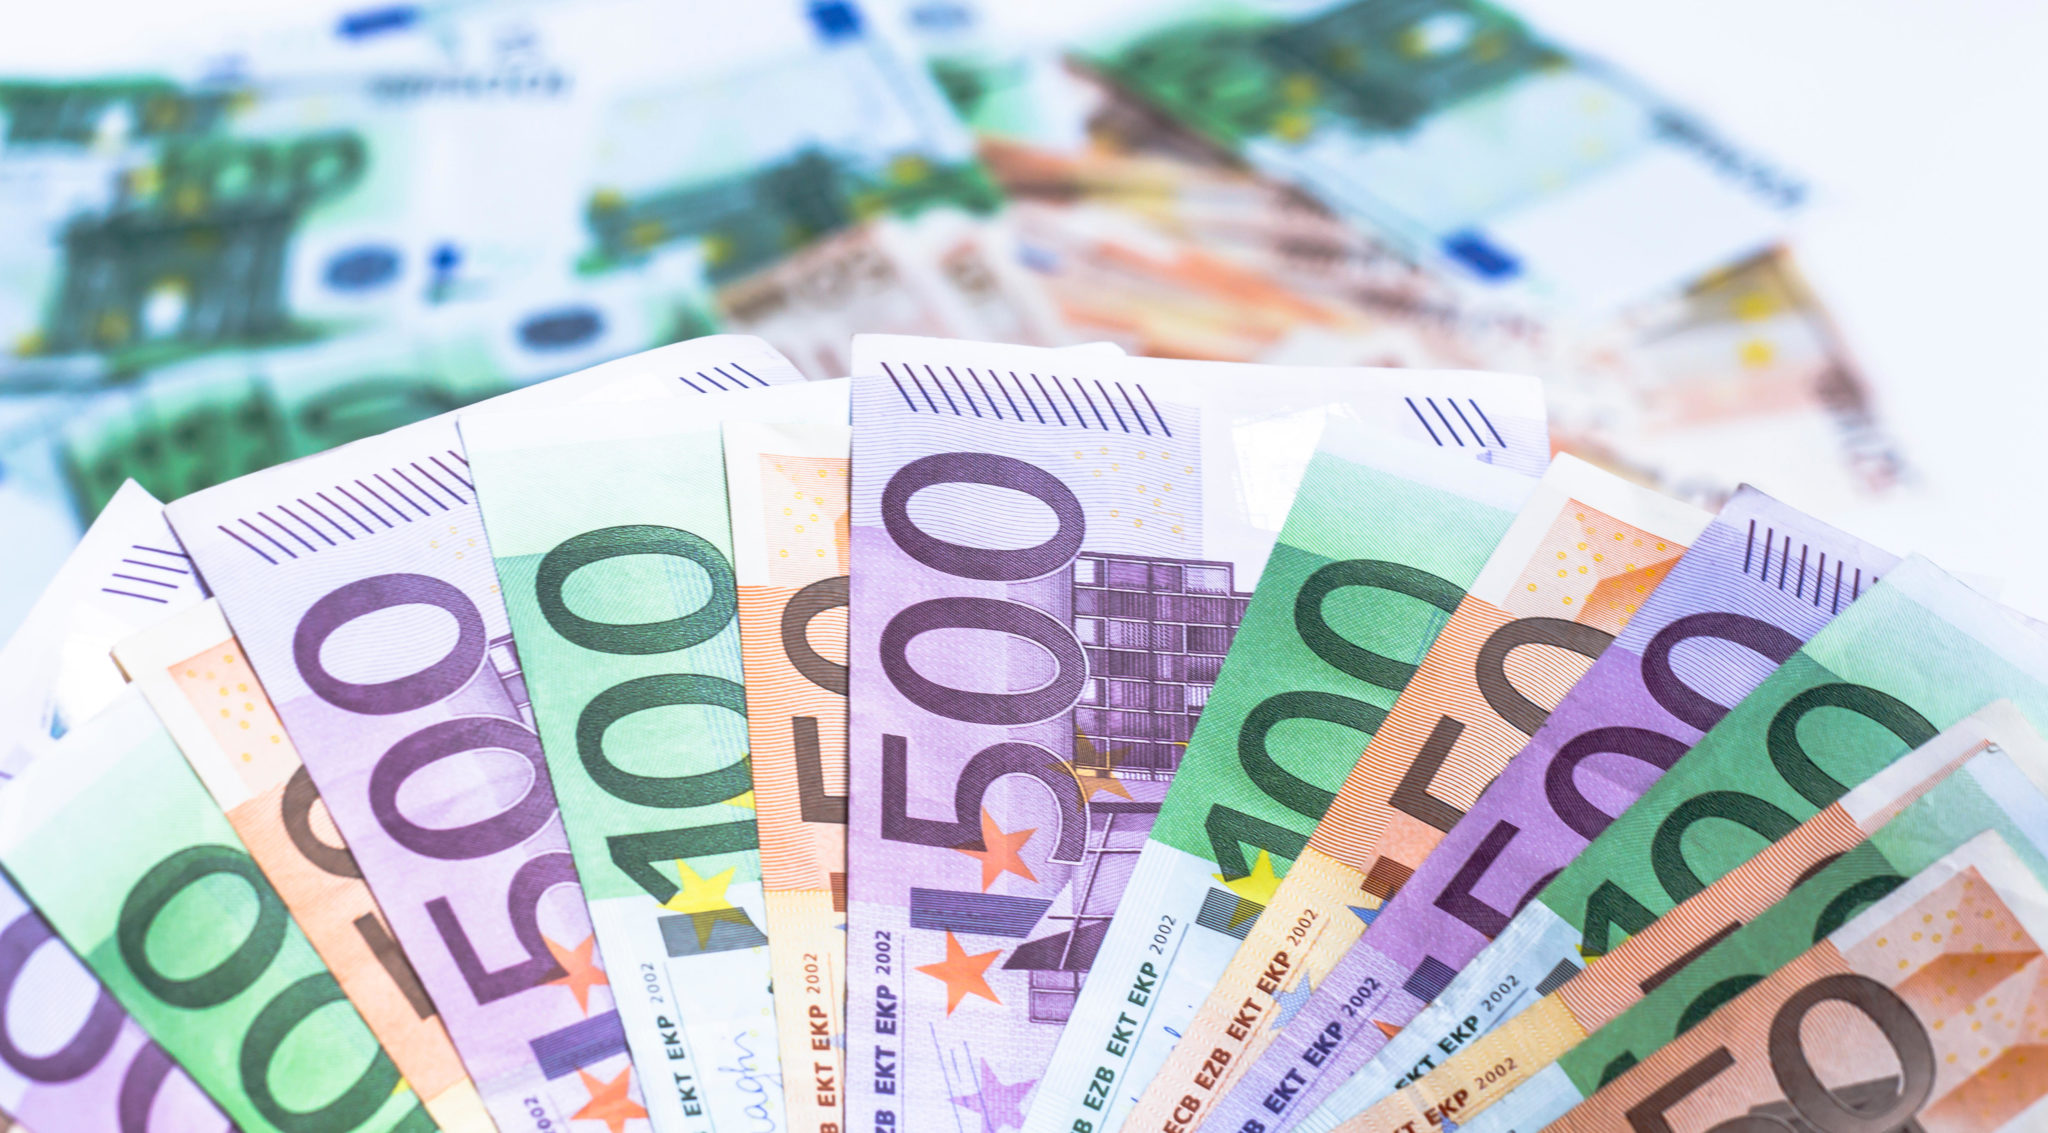 euro money banknotes. Picture by: Alice Dias Didszoleit / Alamy Stock Photo